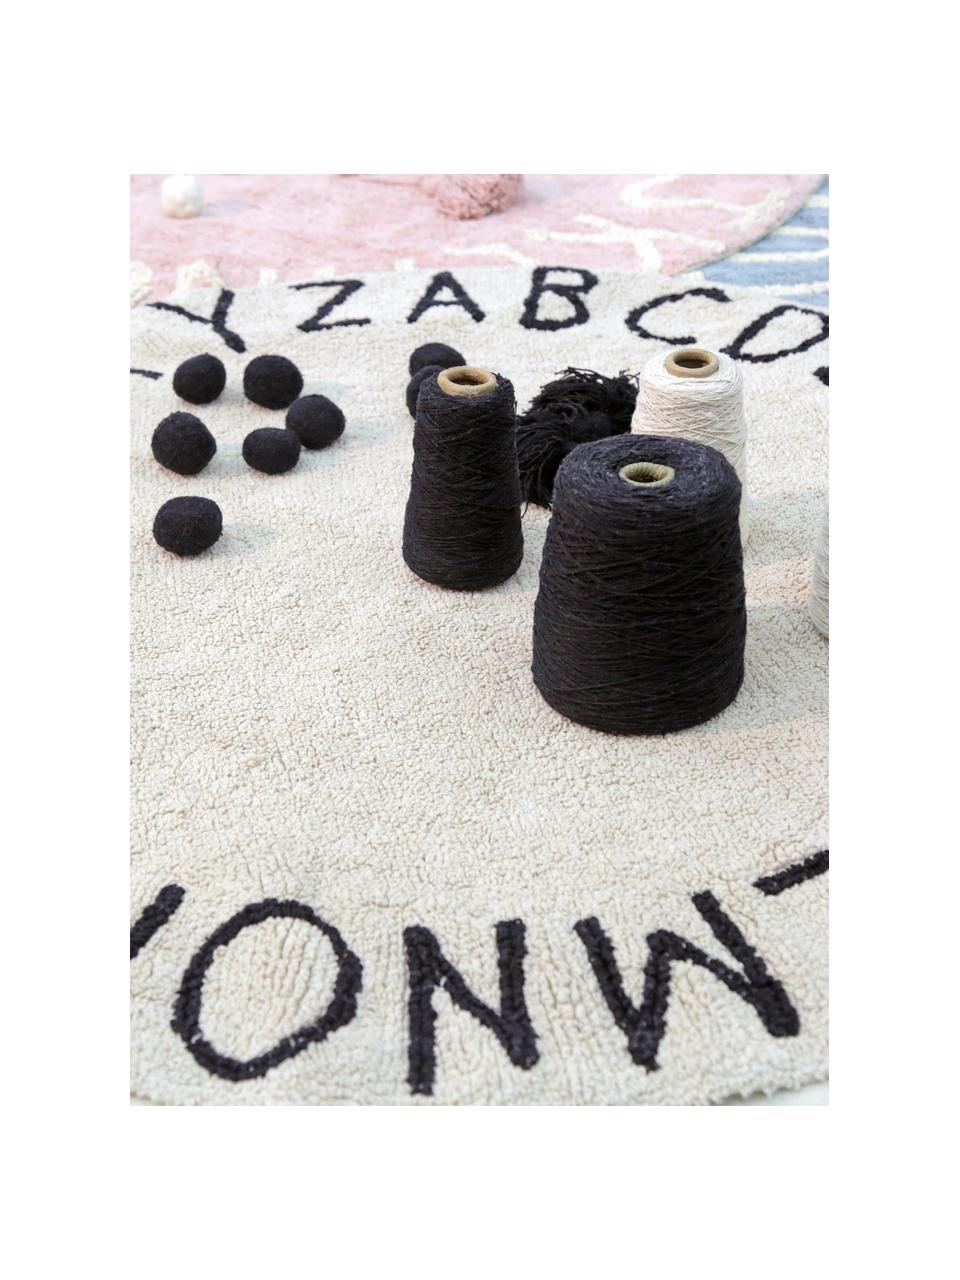 Runder Teppich ABC mit Buchstaben Design, Recycelte Baumwolle (80% Baumwolle, 20% andere Fasern), Beige & Schwarz, Ø 150 cm (Größe M)